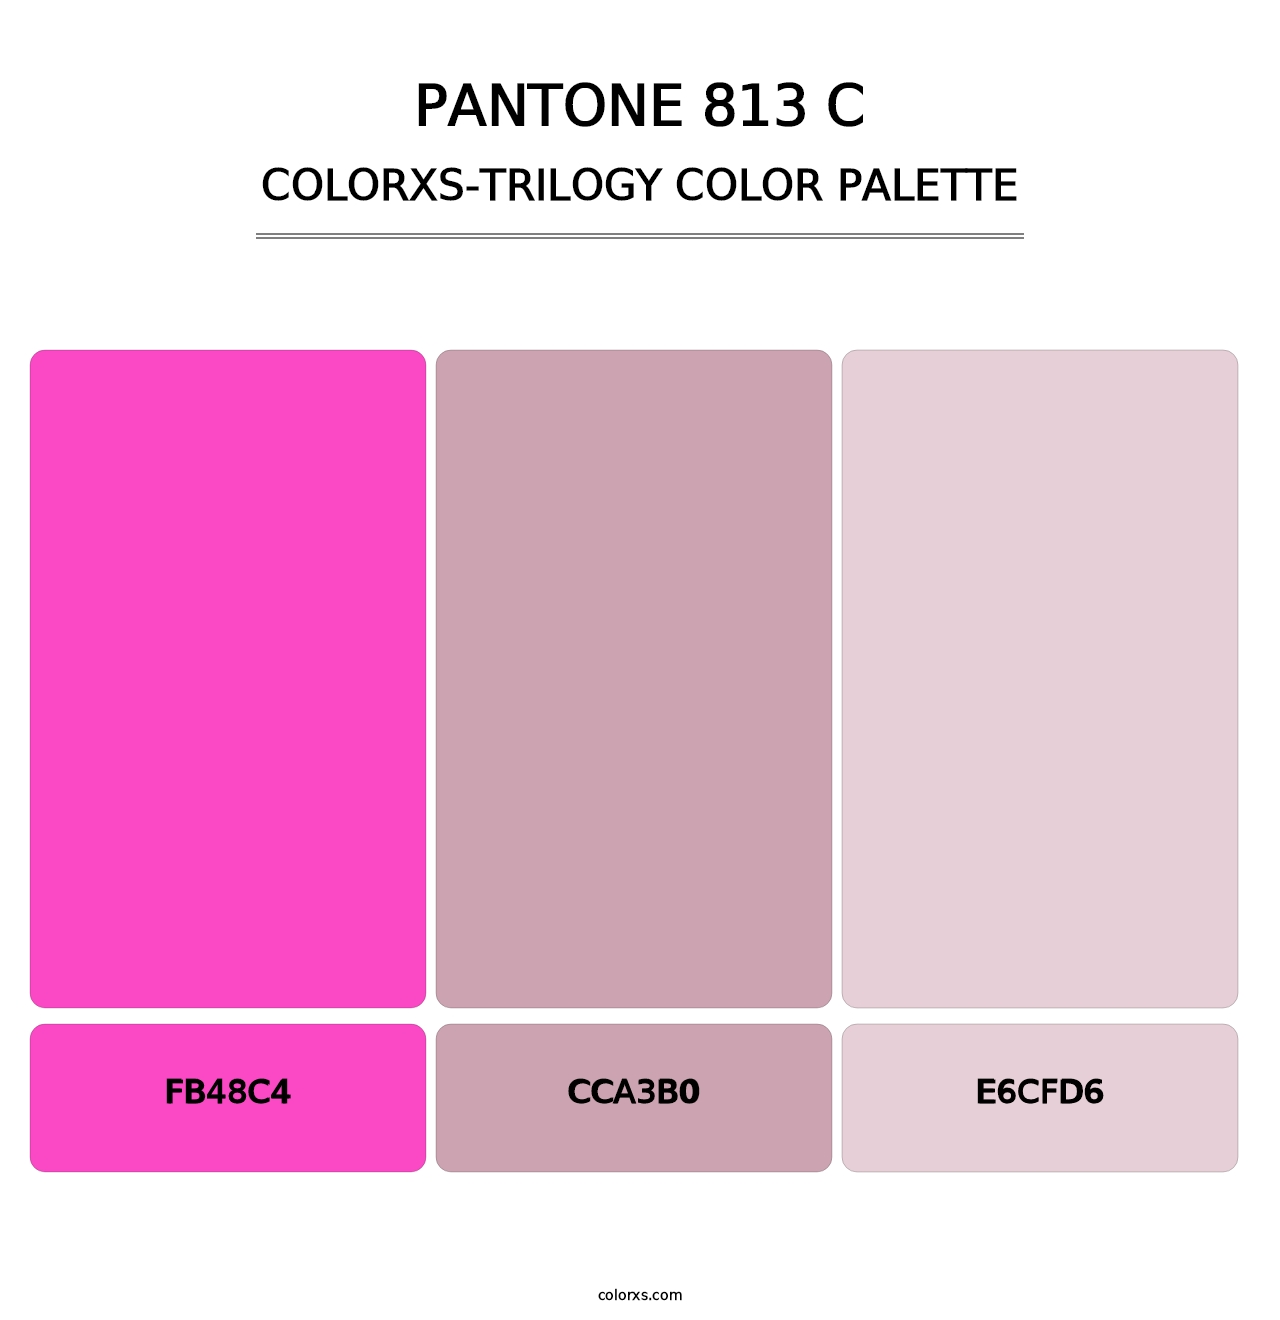 PANTONE 813 C - Colorxs Trilogy Palette